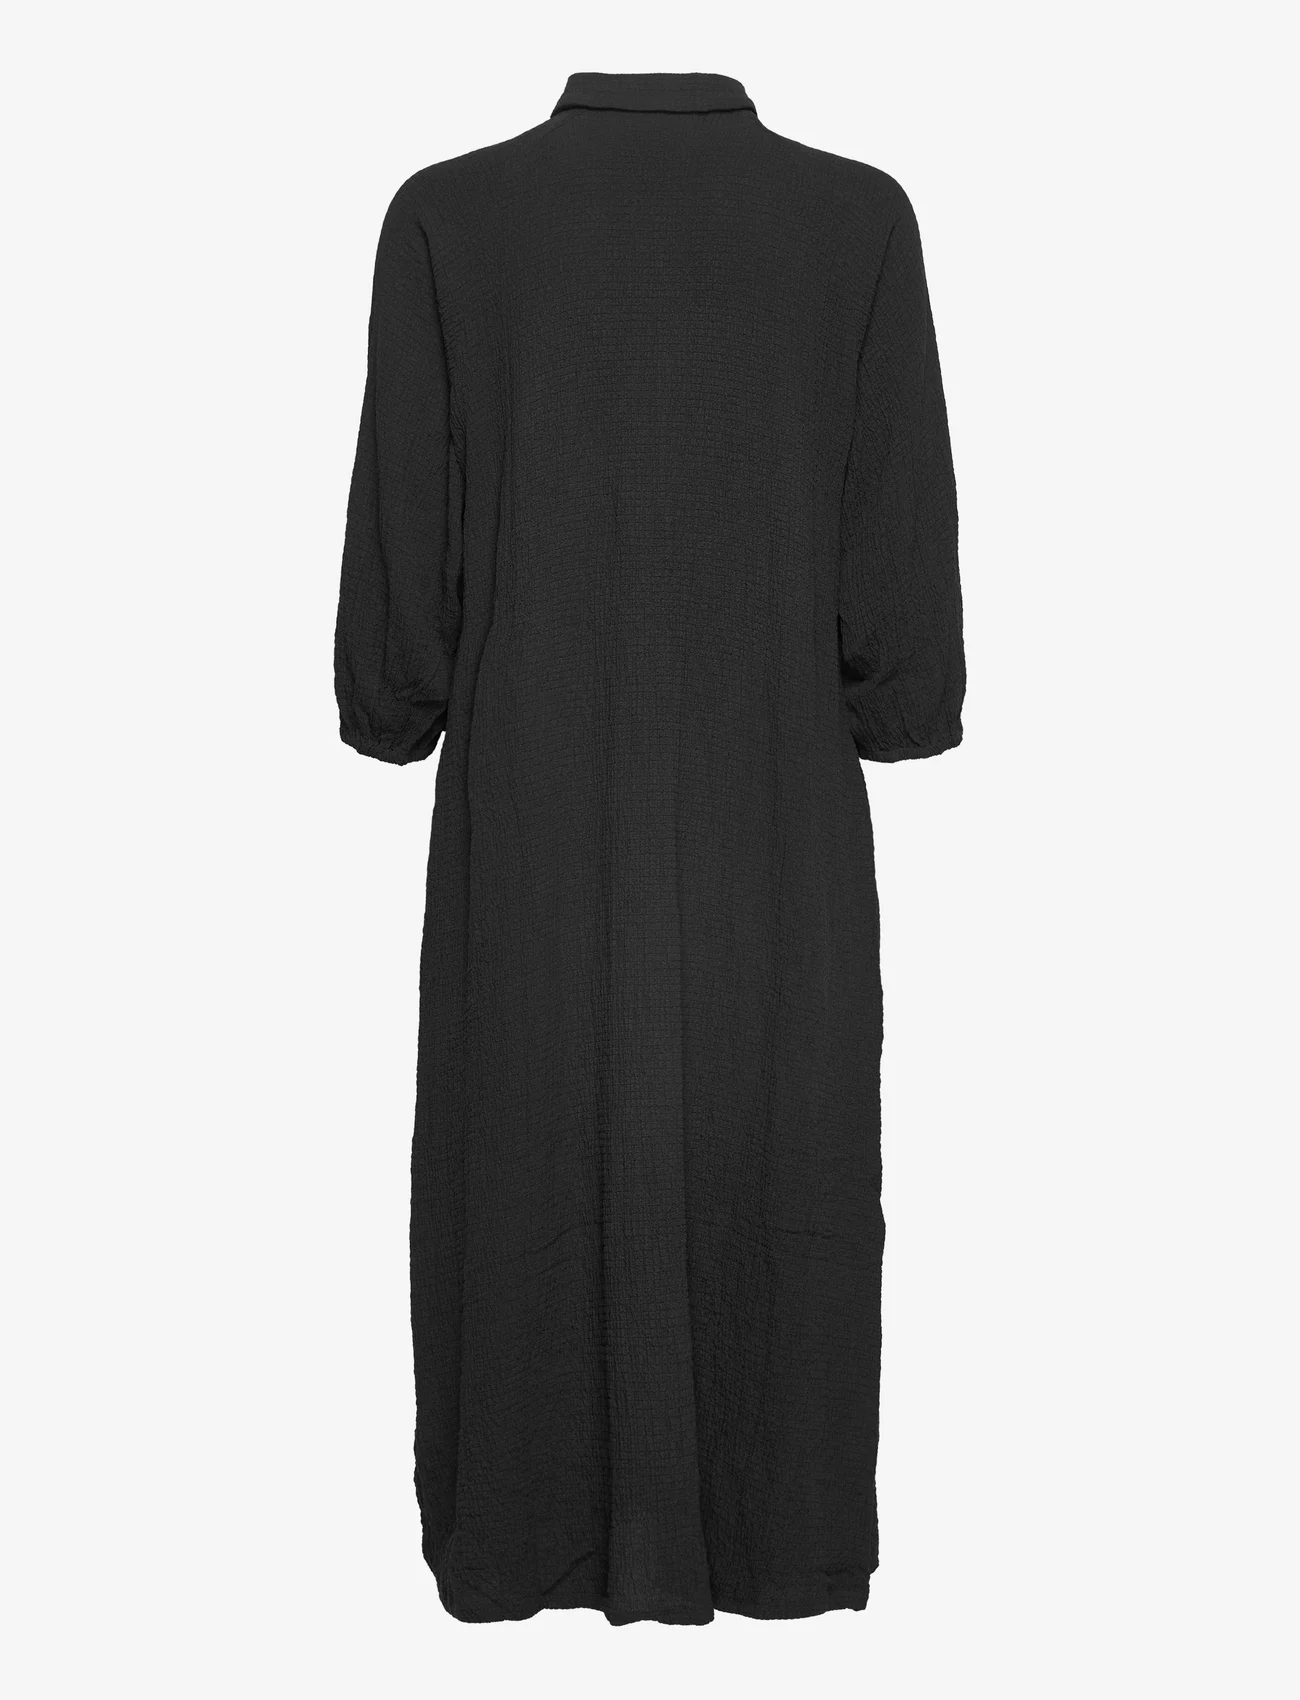 Kaffe - KAbarral Shirt Dress 3/4 SL - marškinių tipo suknelės - black deep - 1